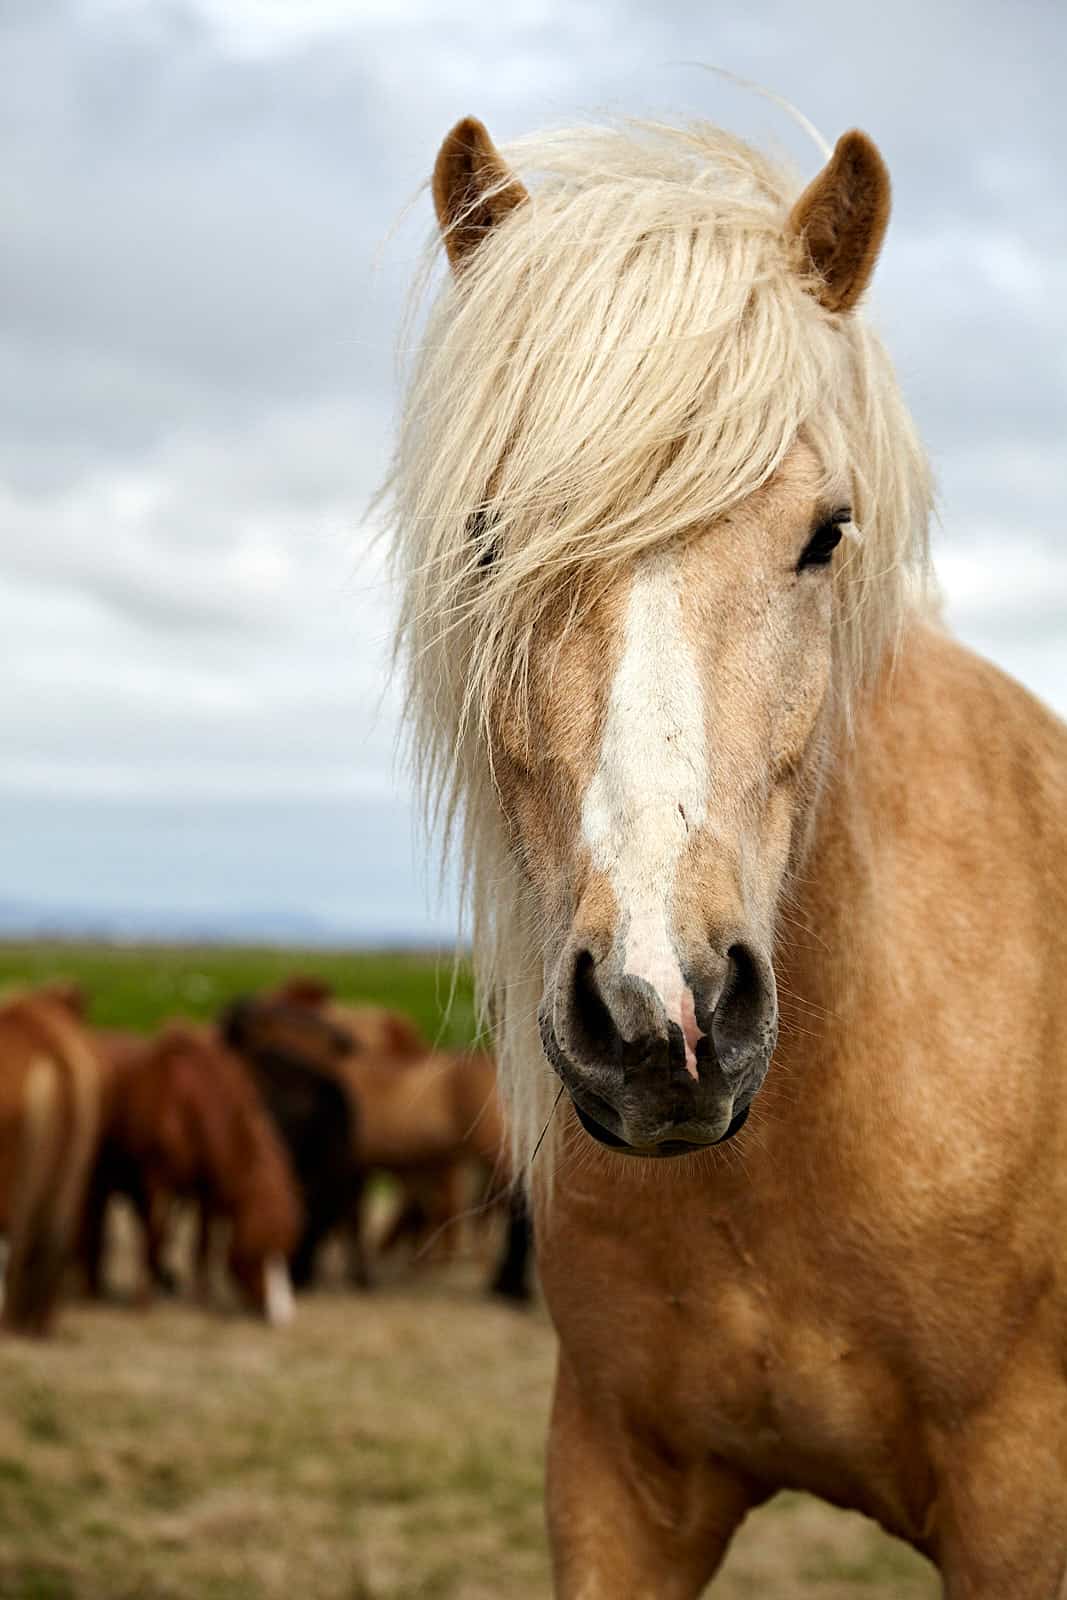 Islândia, retrato de um cavalo Islandês na região de Stokkseyri